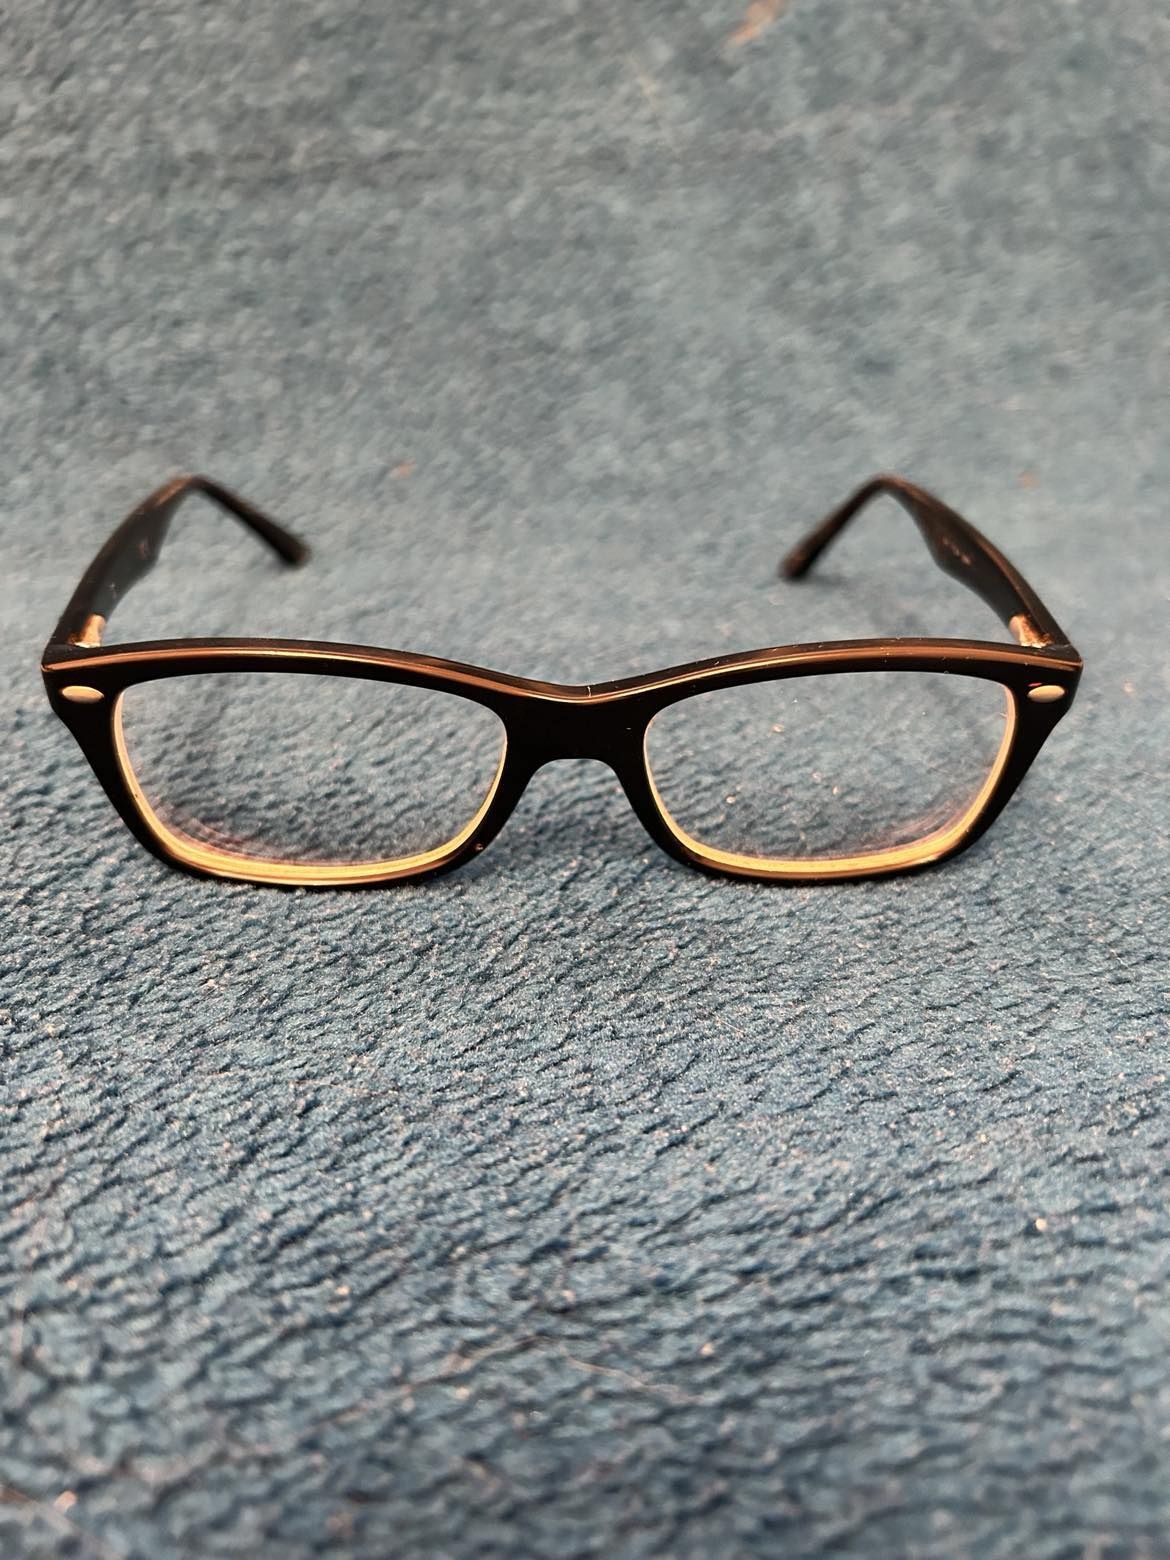 Okulary ray ban - oprawki